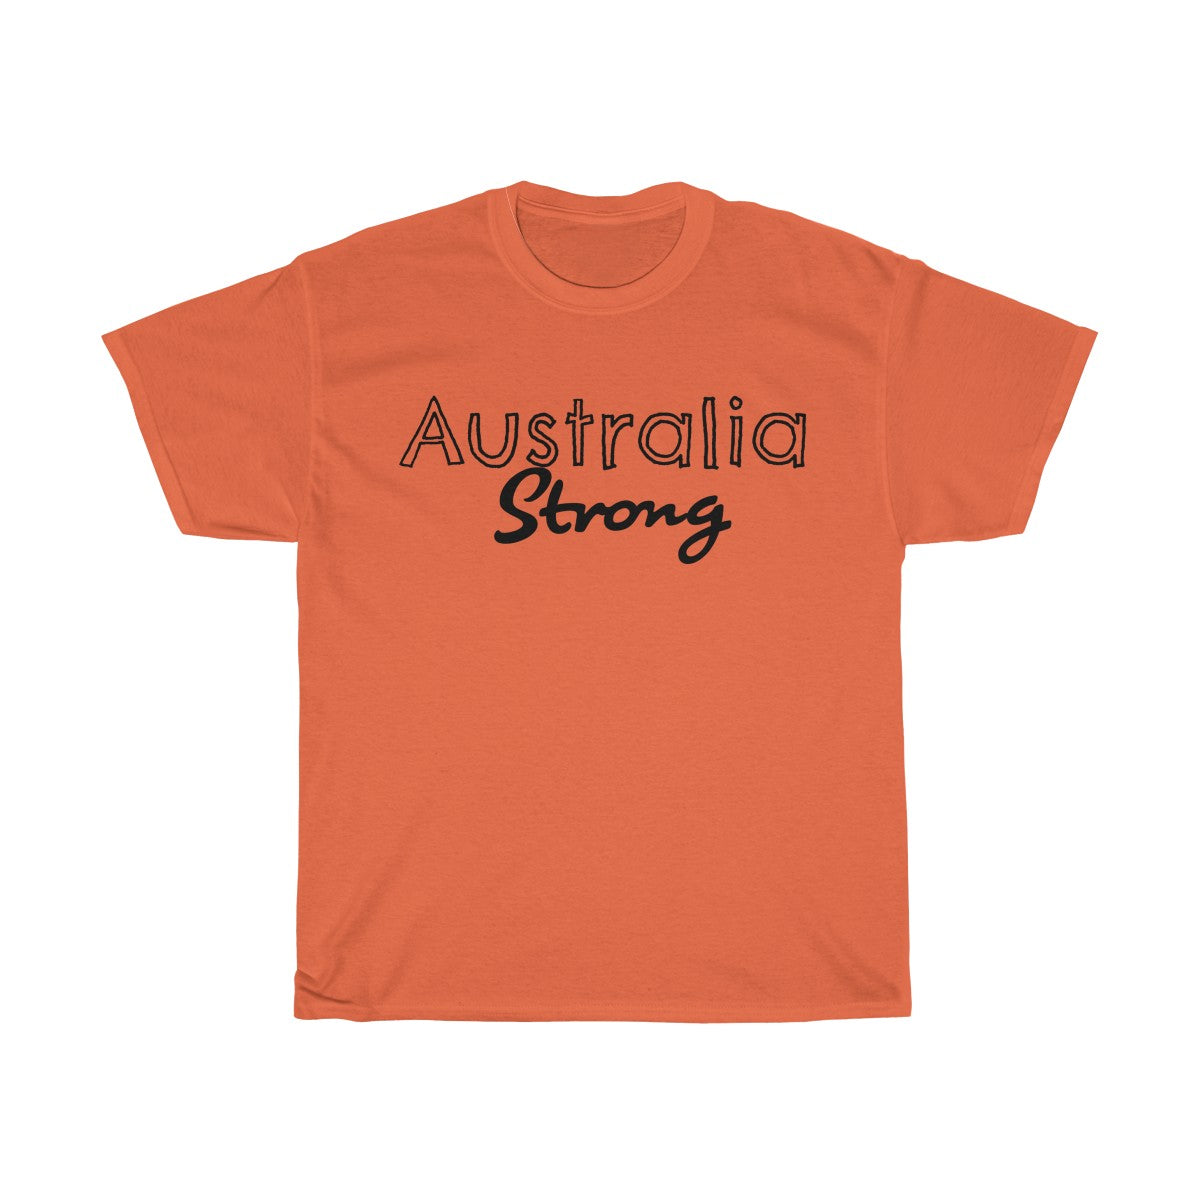 Australia Strong Unisex Tee